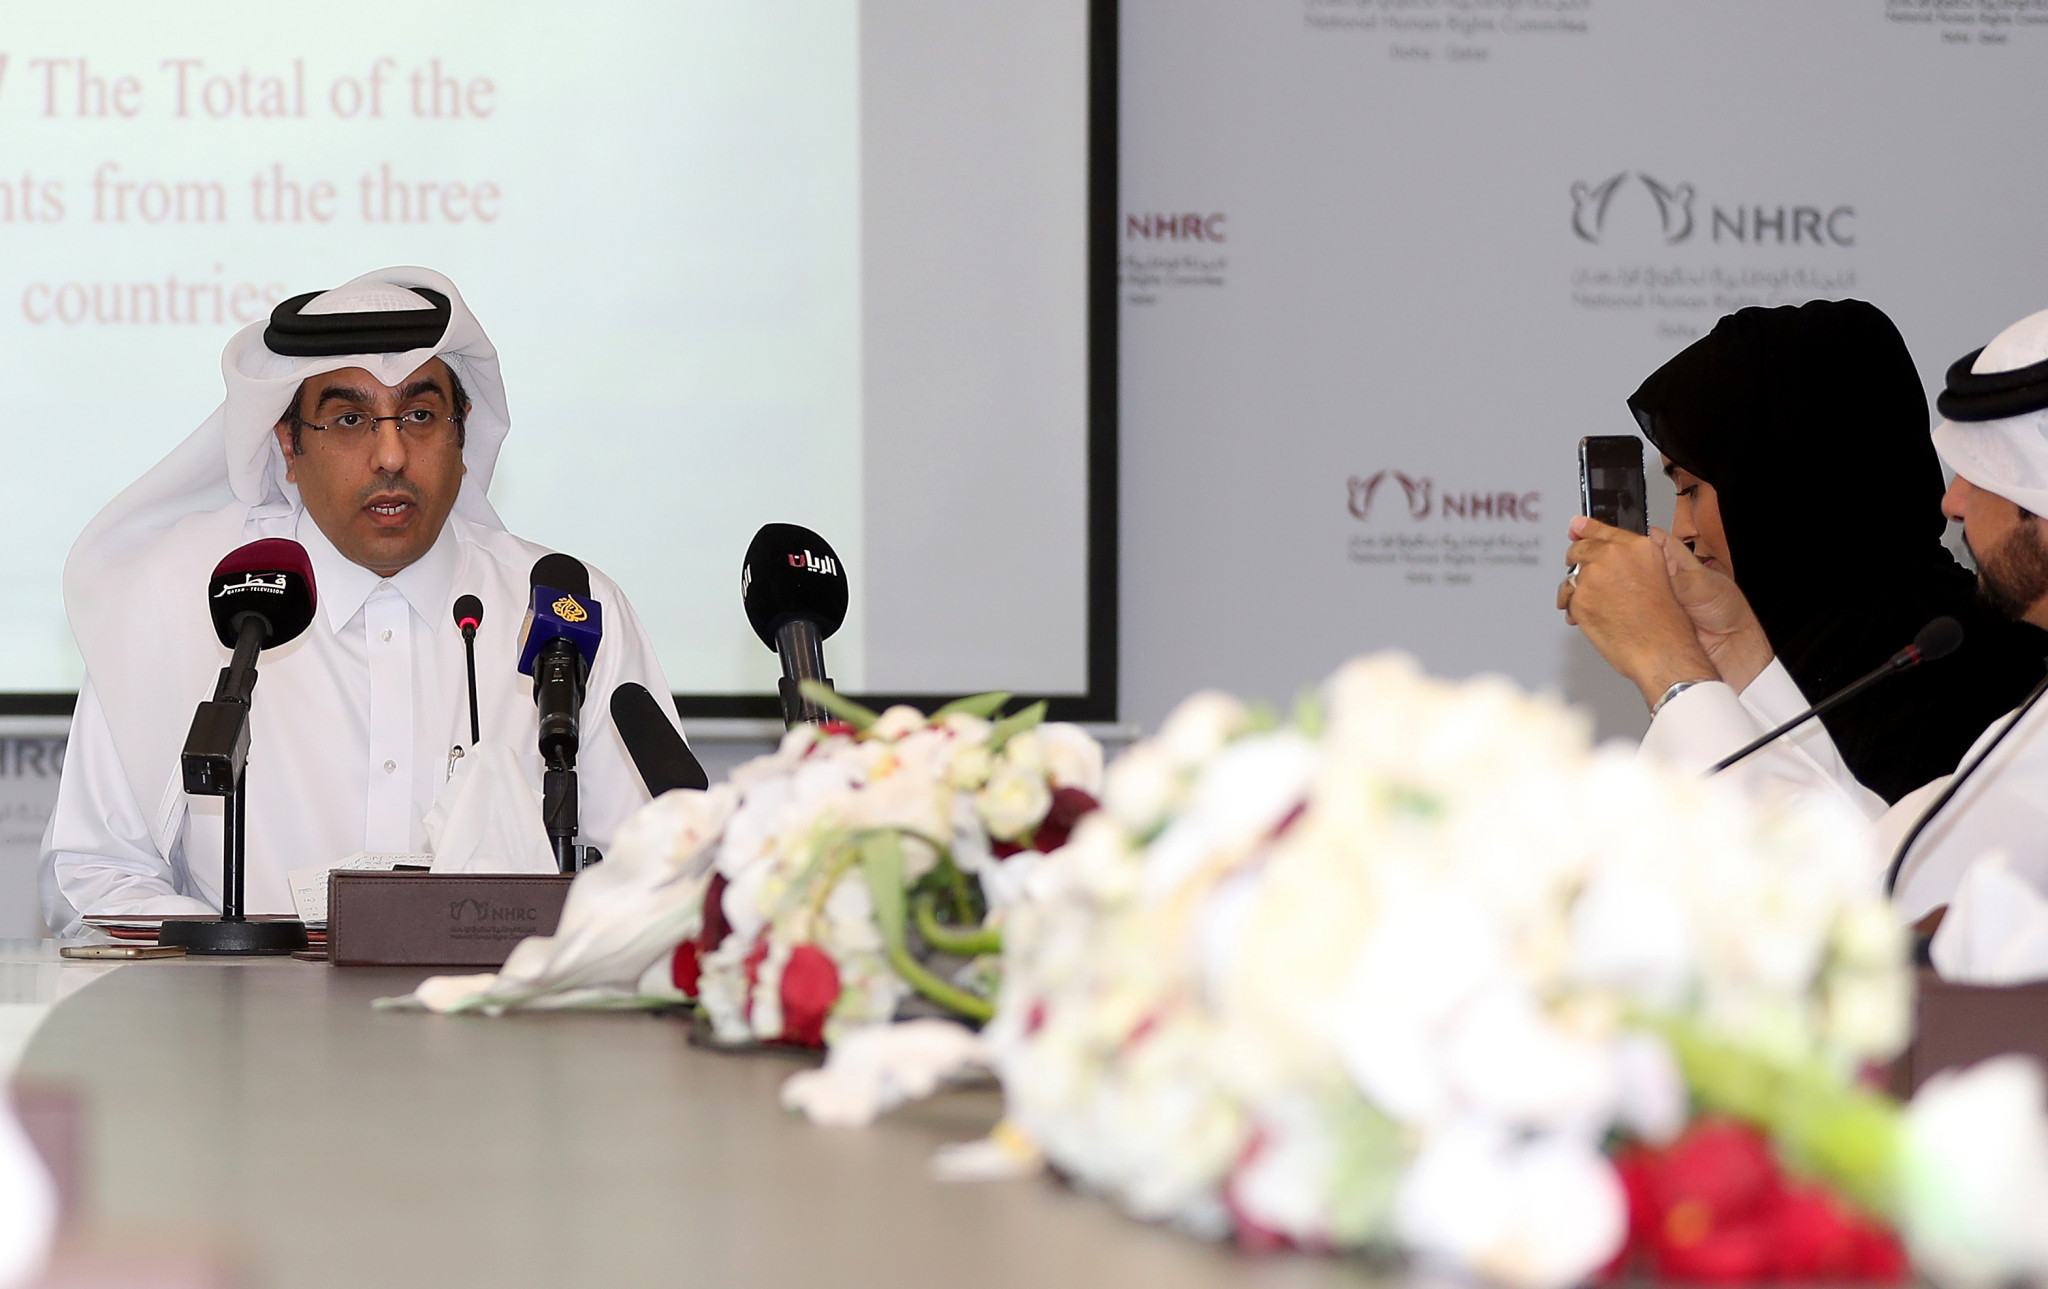 Qatari Labour Minister Ali bin Samikh al-Marri was criticised for his dismissive comments ©Getty Images